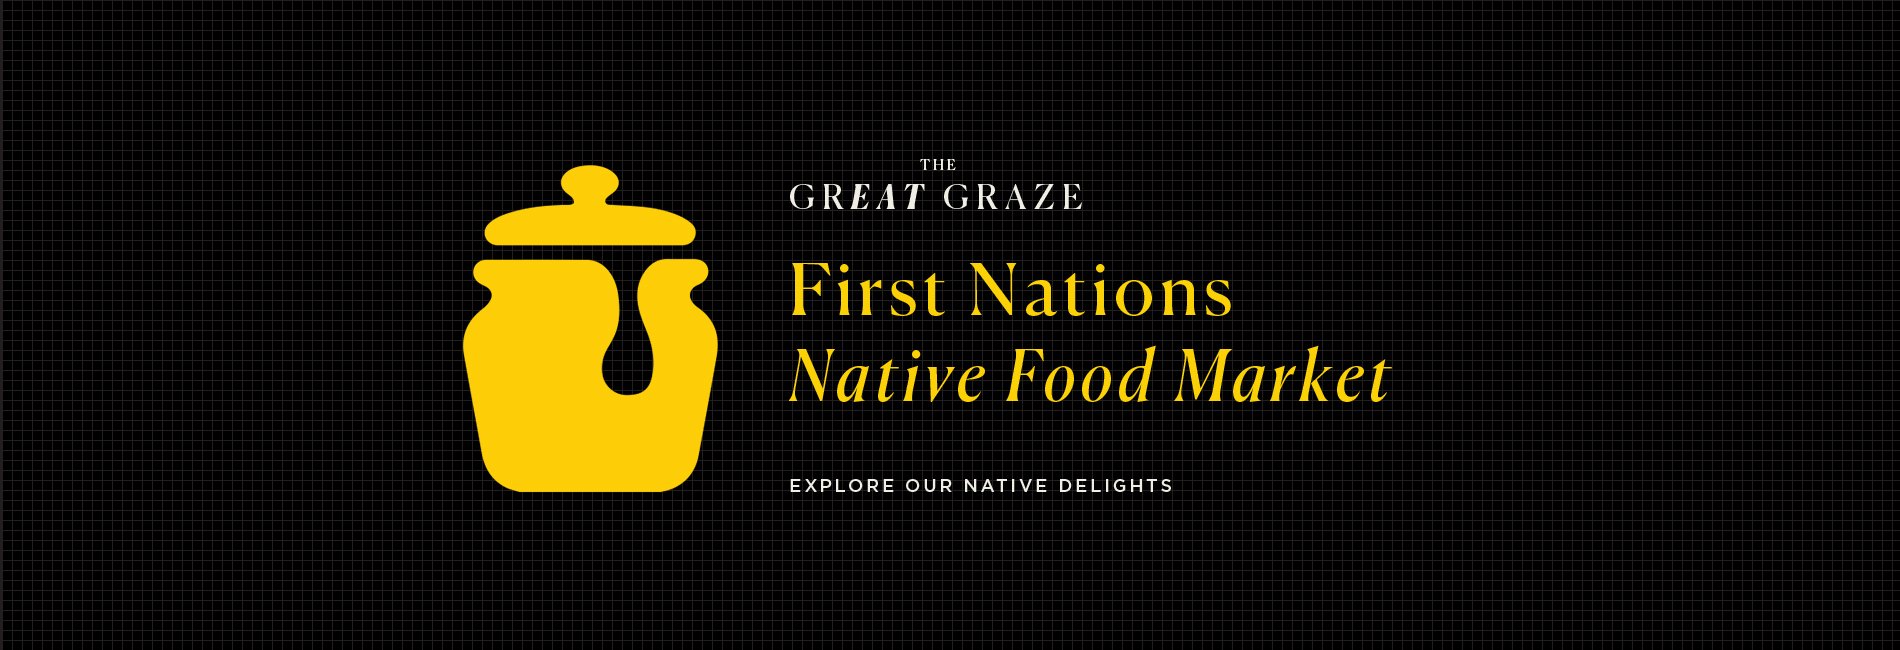 GreatGraze-FirstNationsMarket-banner-1900-x-650.jpg